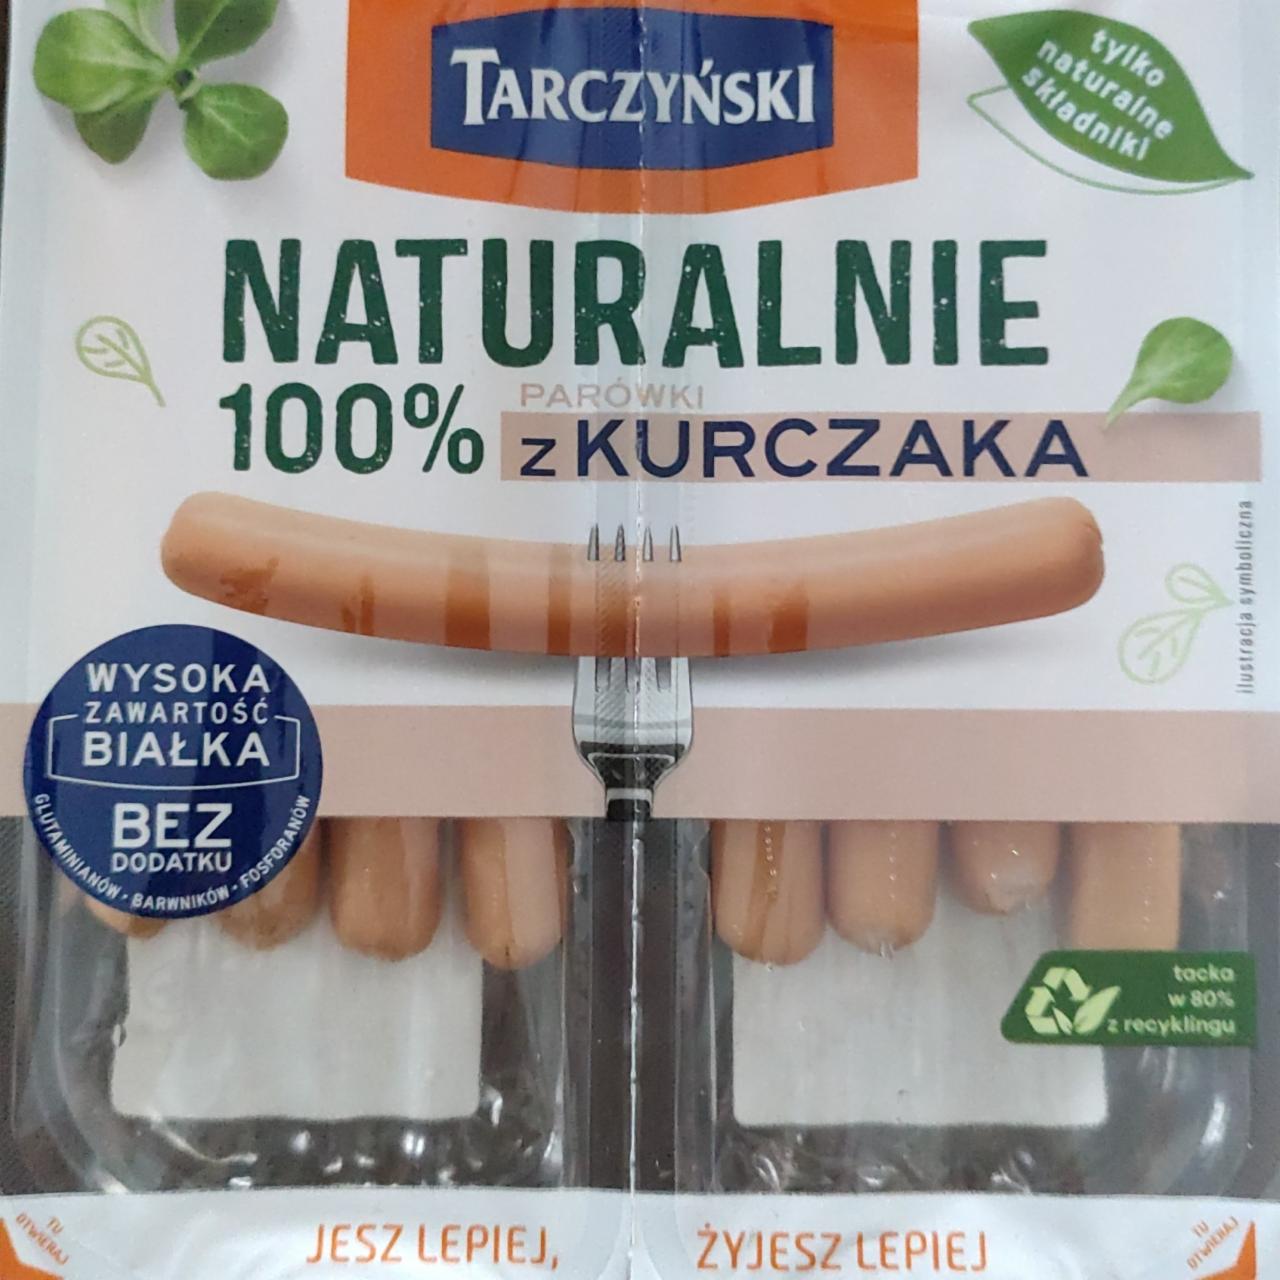 Zdjęcia - parówki z kurczaka naturalnie 100% Tarczyński